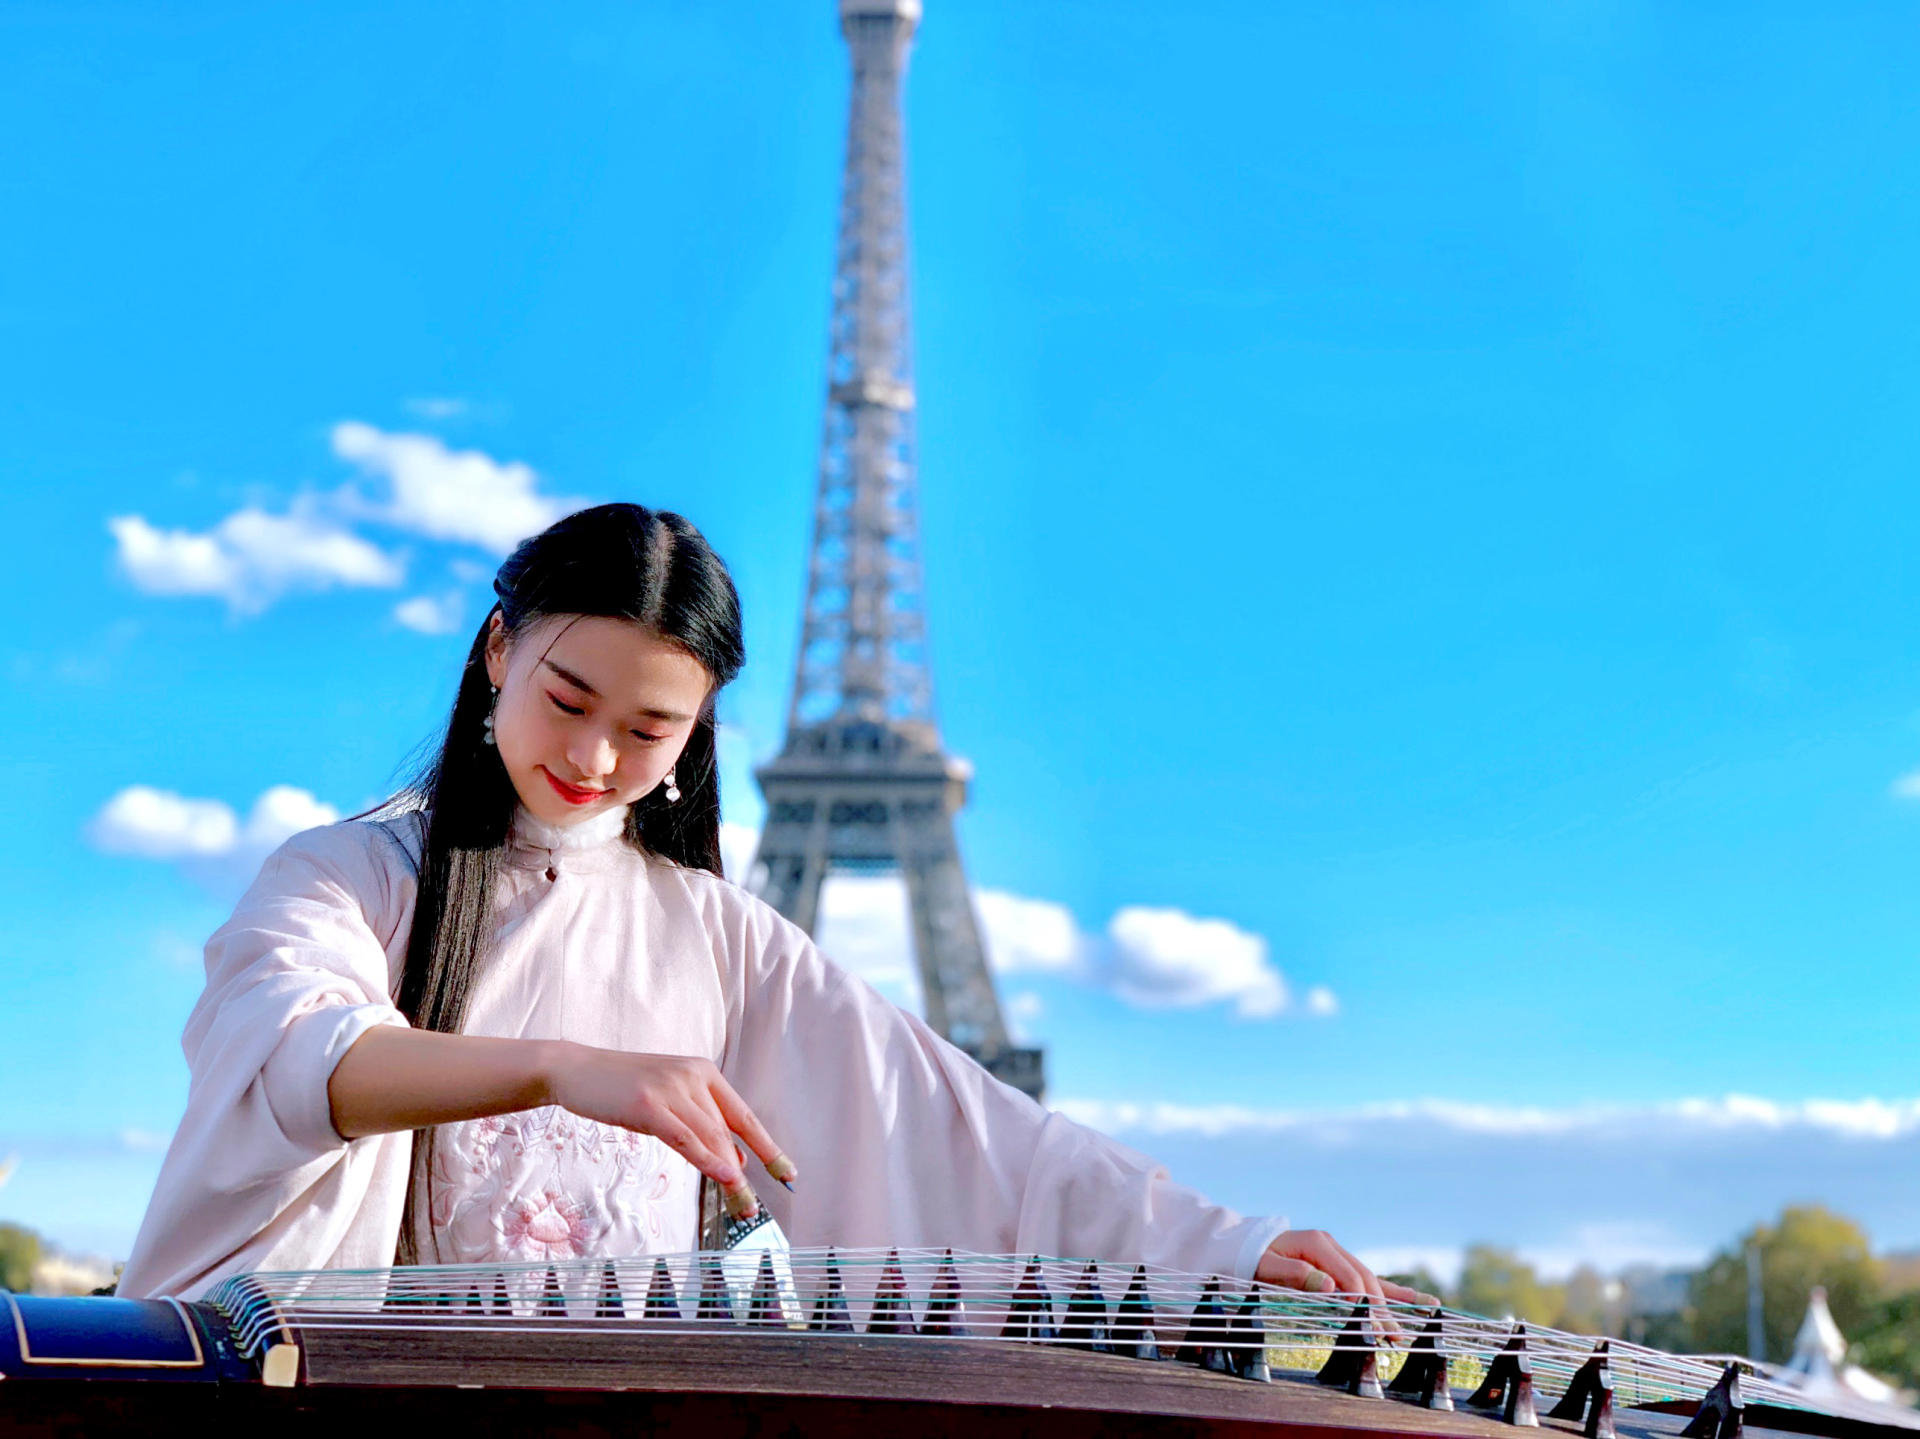 抖音账号@碰碰彭碰碰弹古筝,中国女留学生在法国街头“天外飞仙”表演